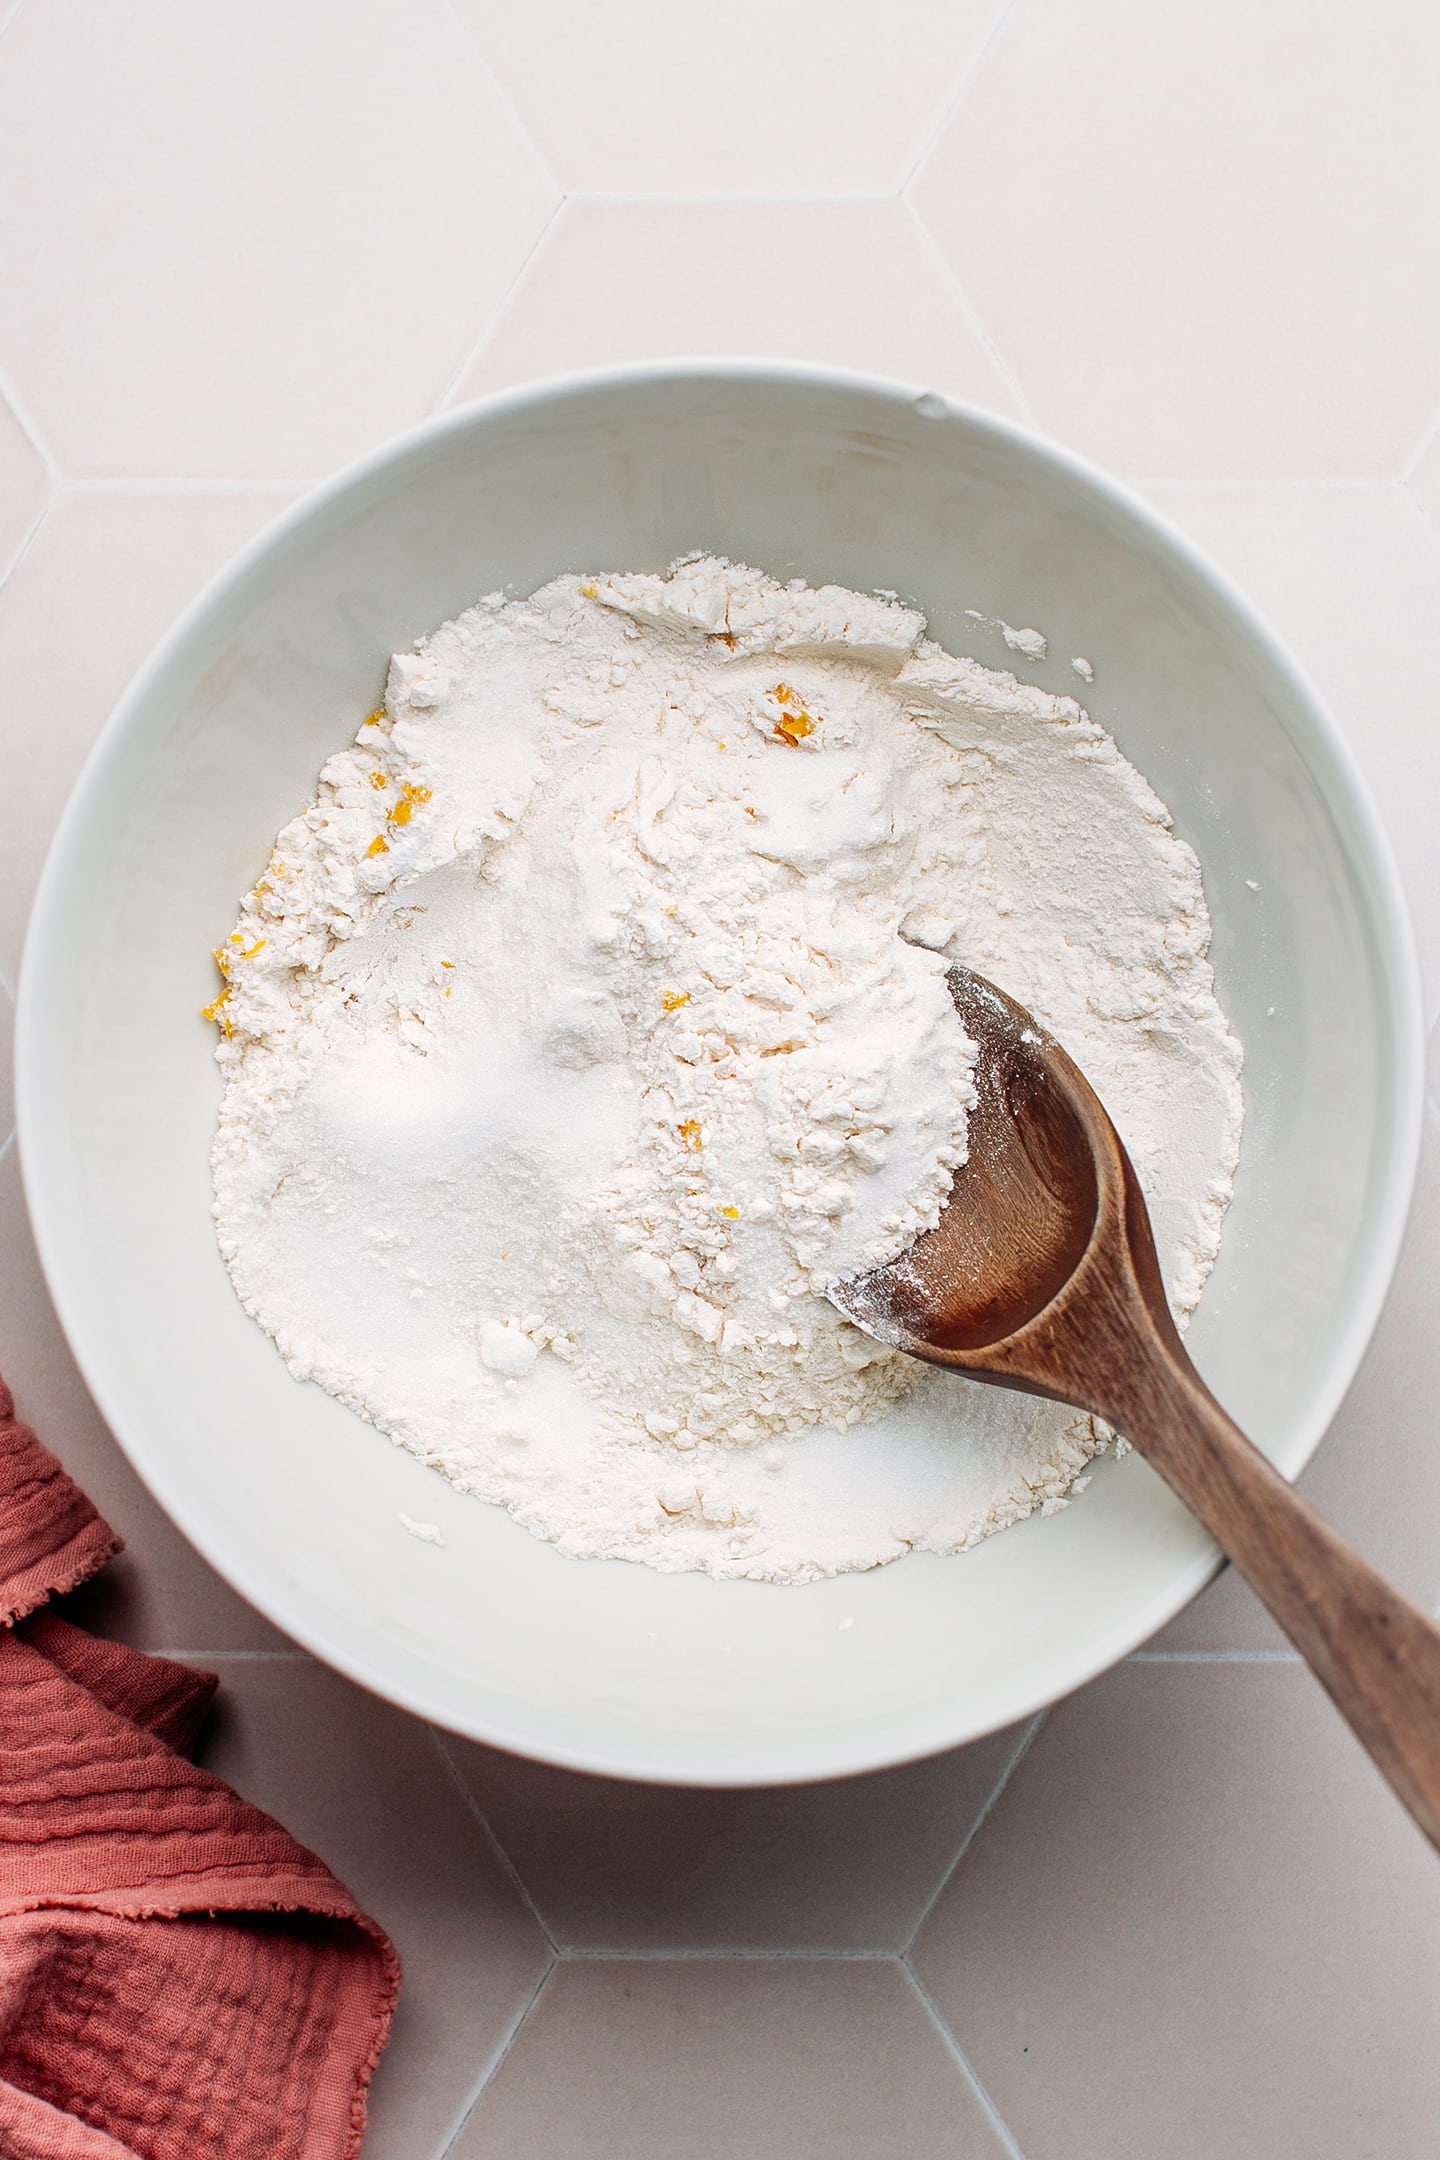 Flour, sugar, and lemon zest in a bowl.